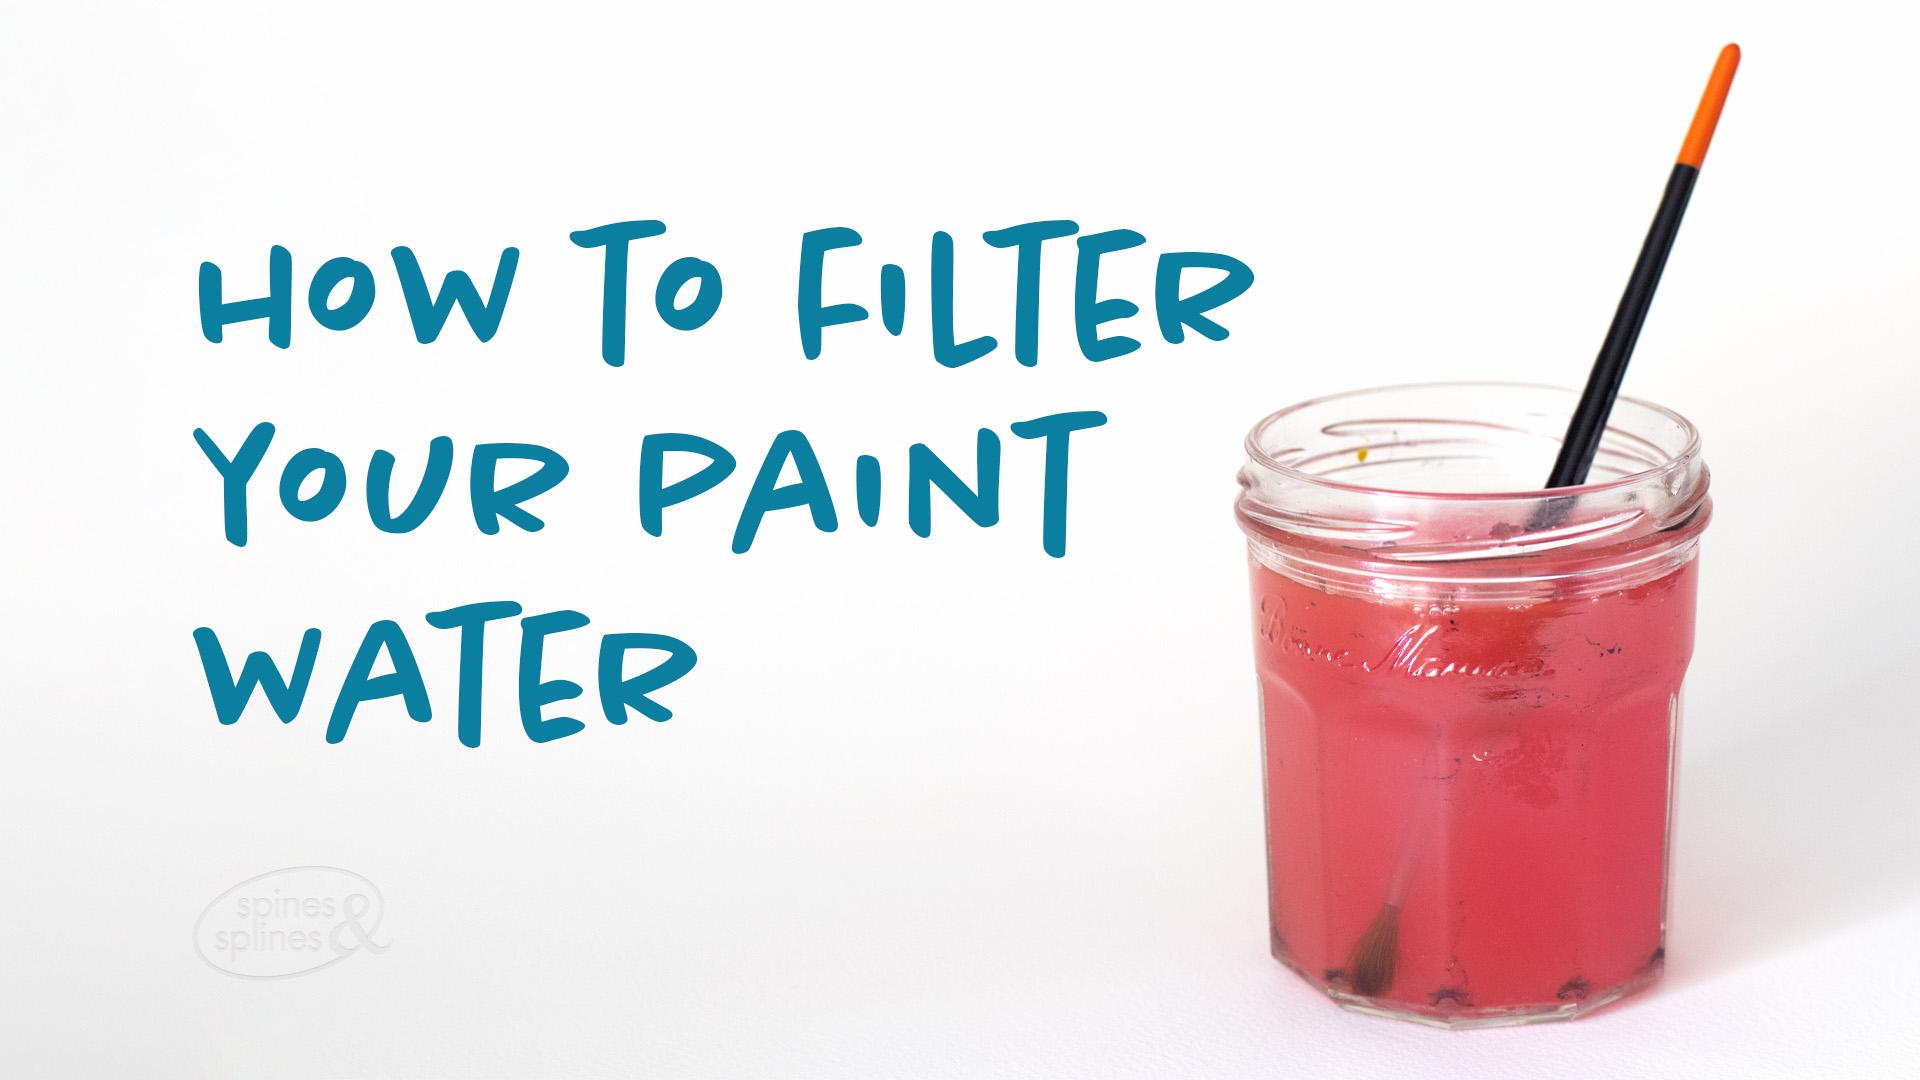 paint-water-filter-still.jpg